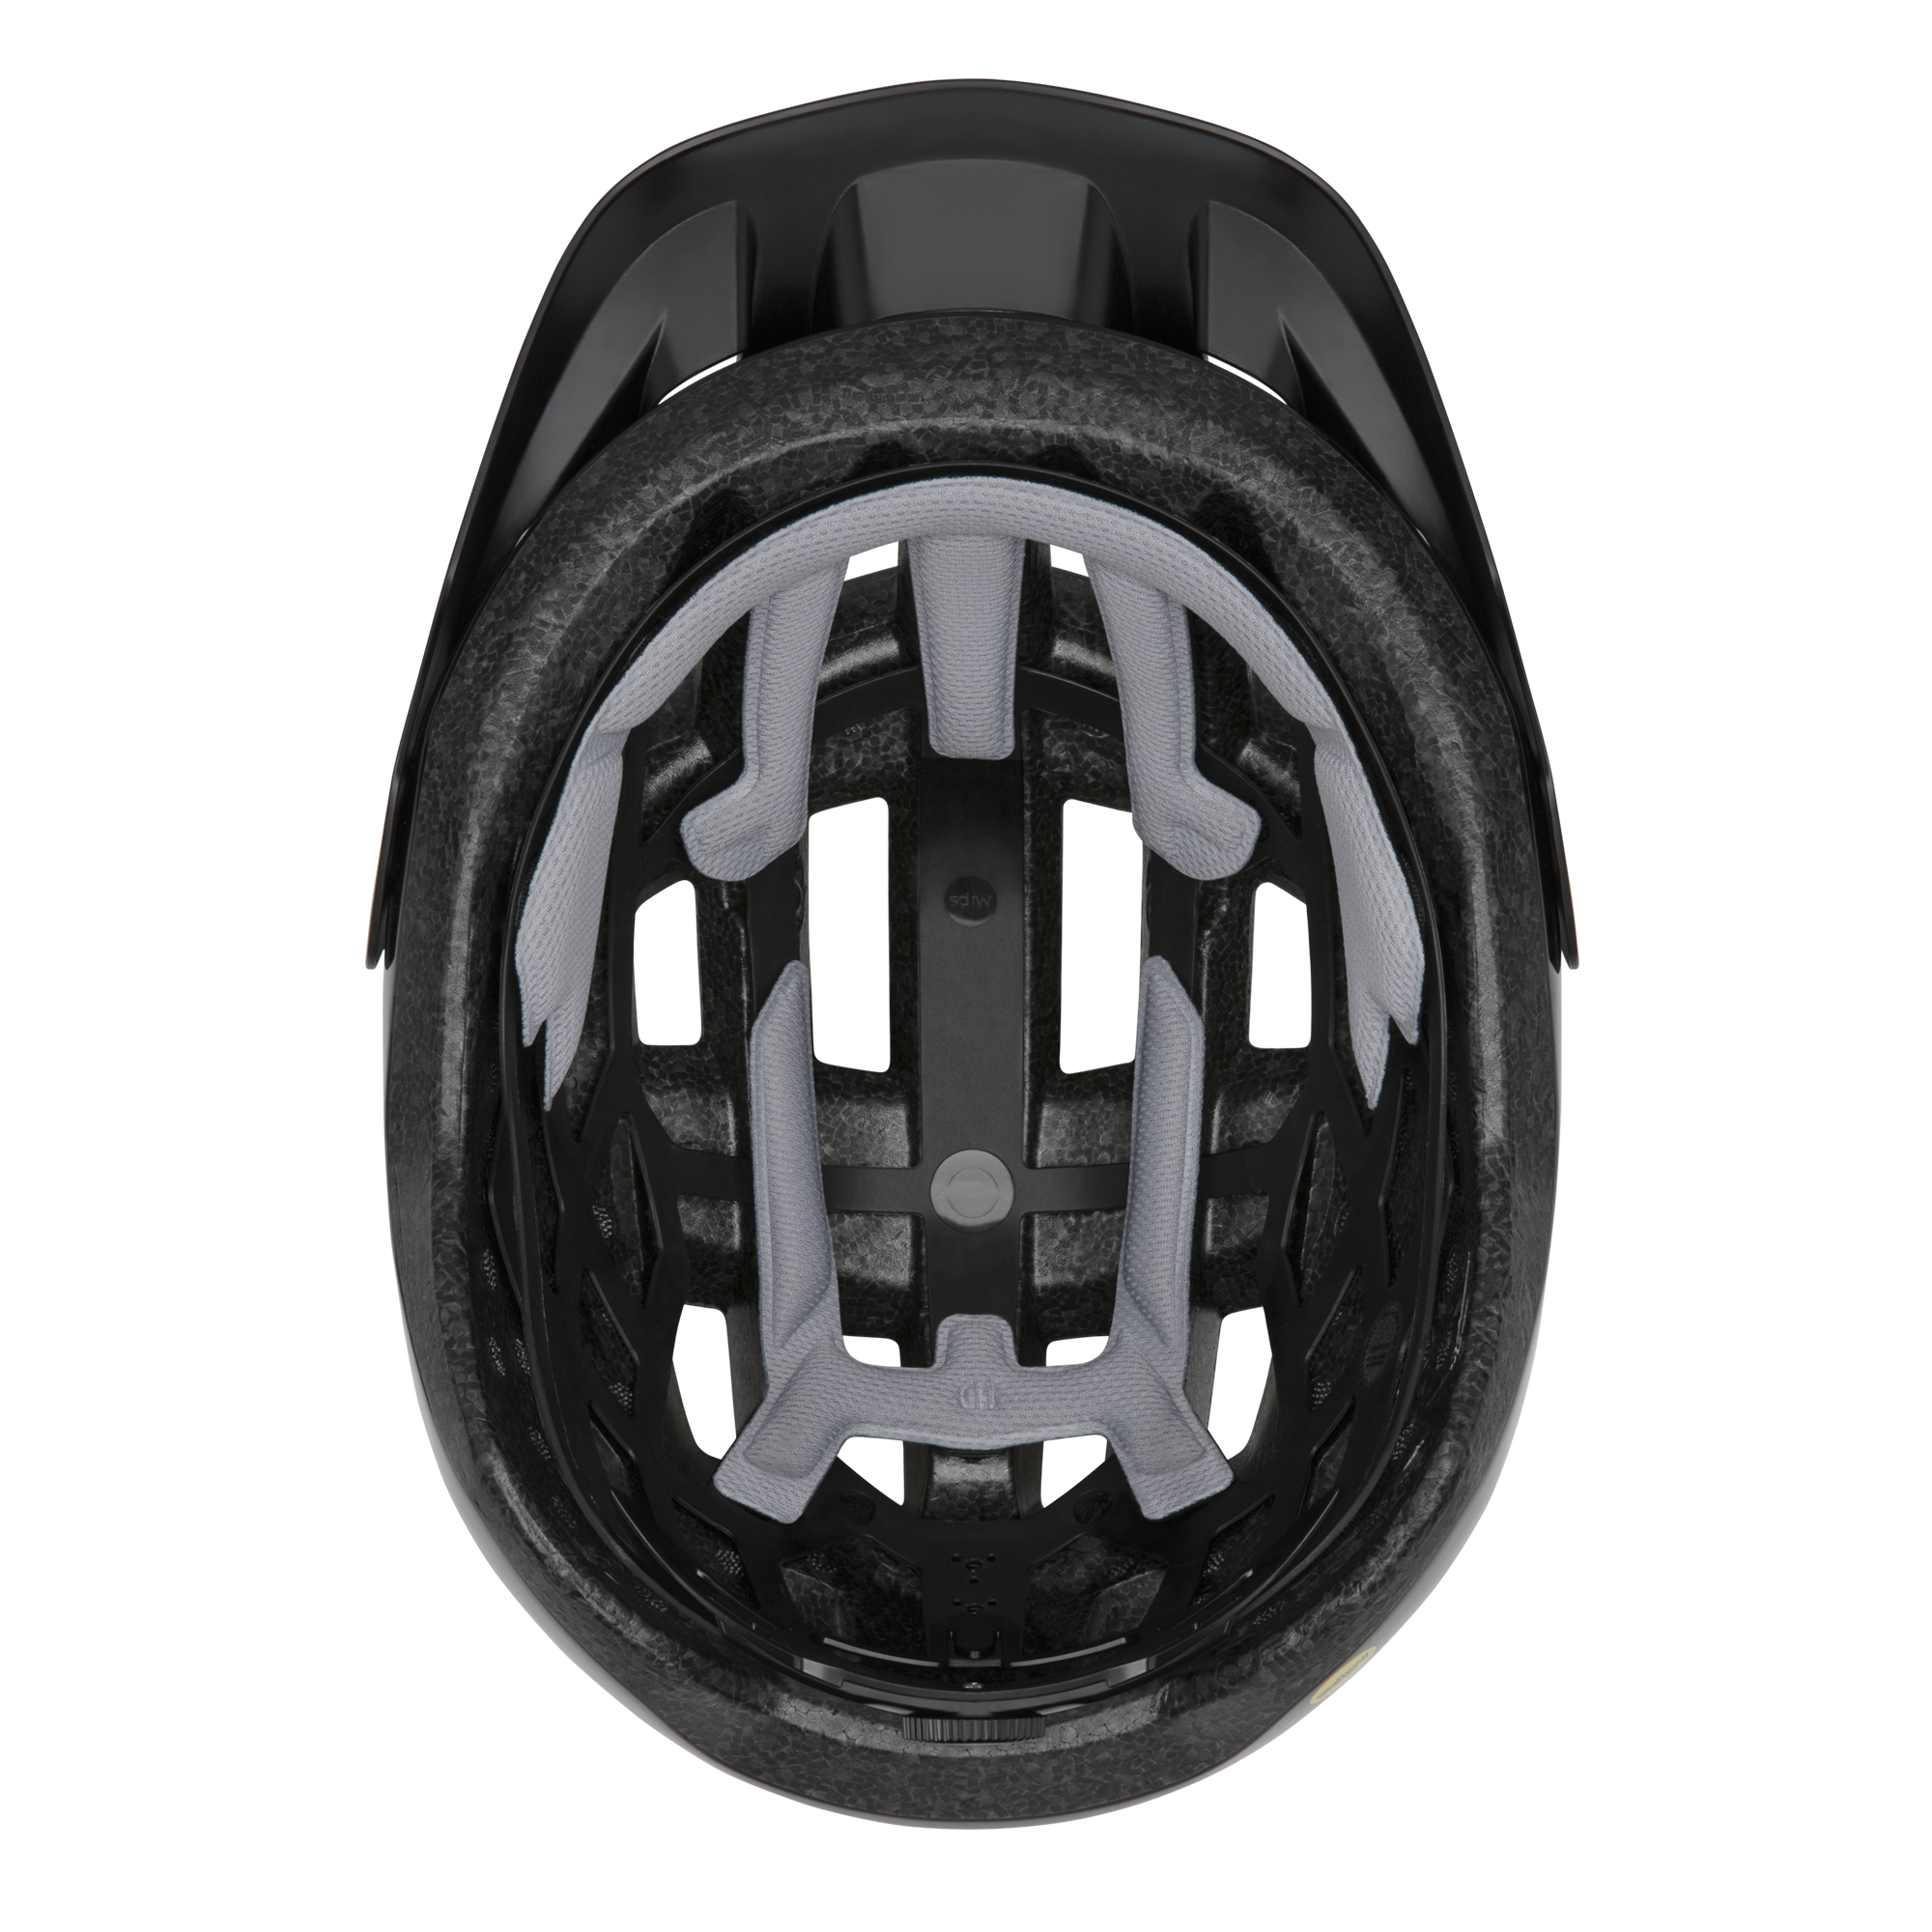 Smith Optics Helmet - Convoy Mips - Black